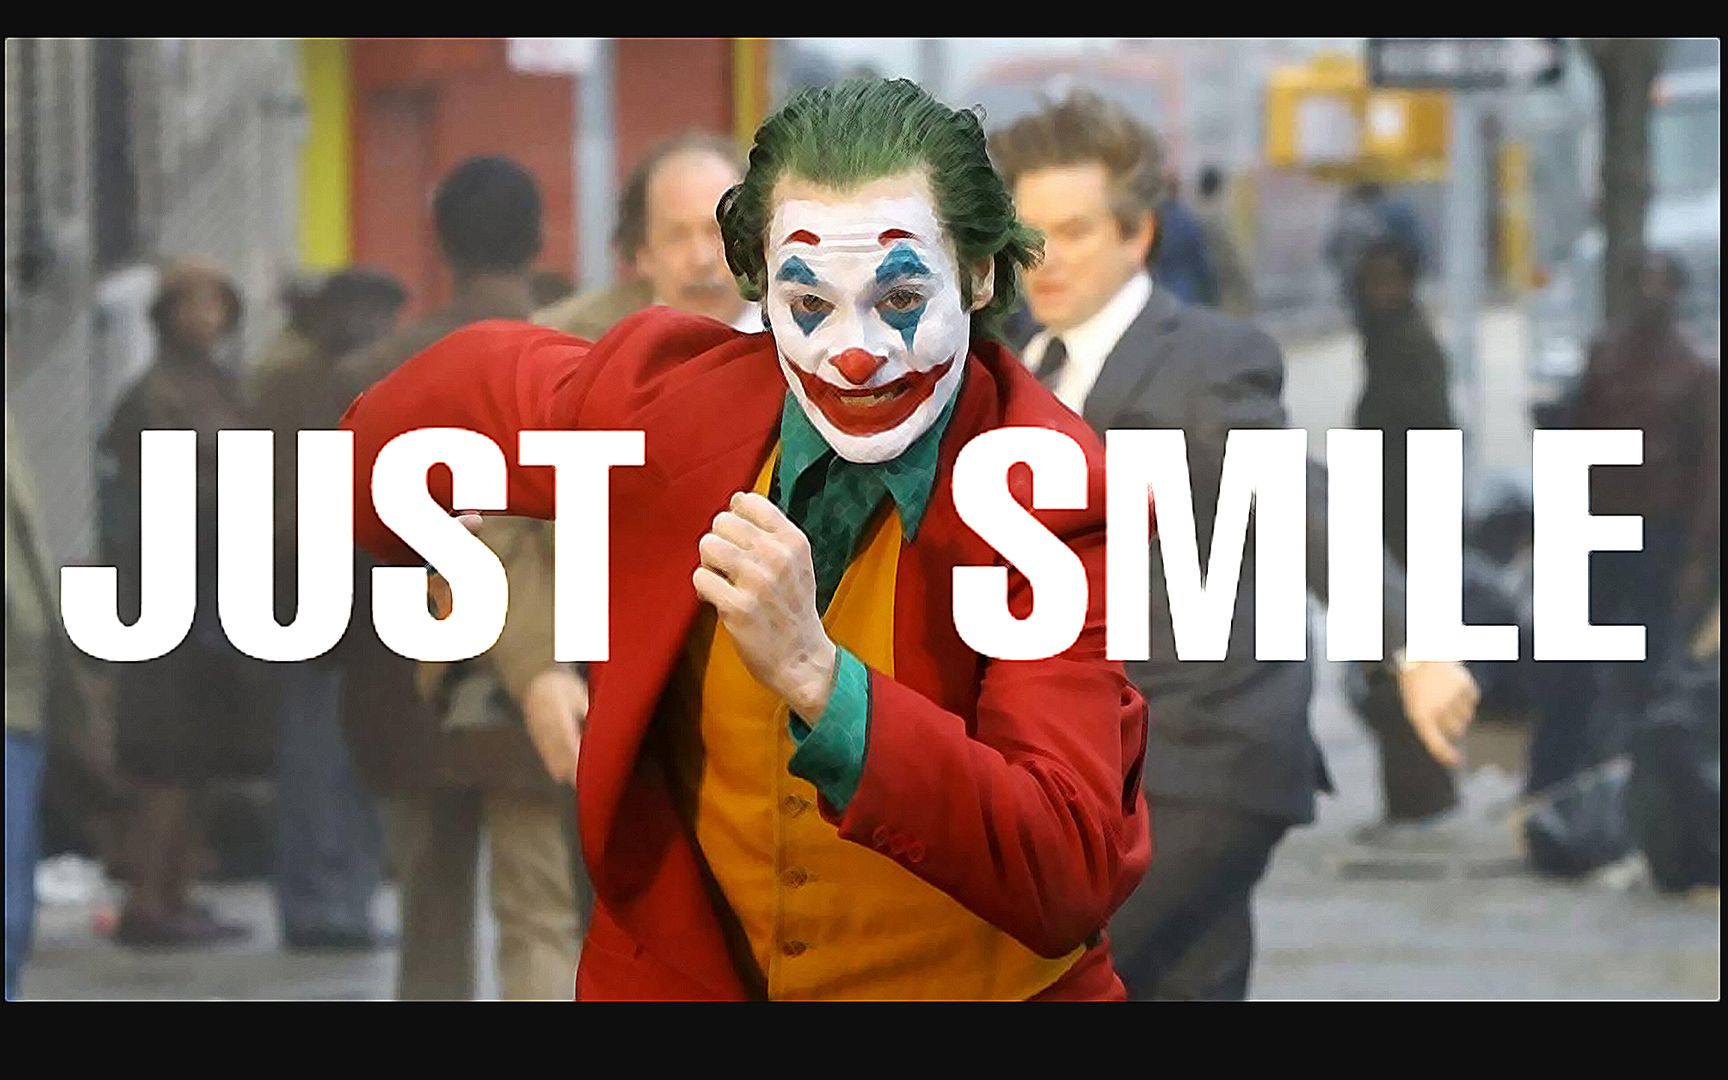 小丑居然是一部暖心电影哥谭市公益广告justsmile保持微笑